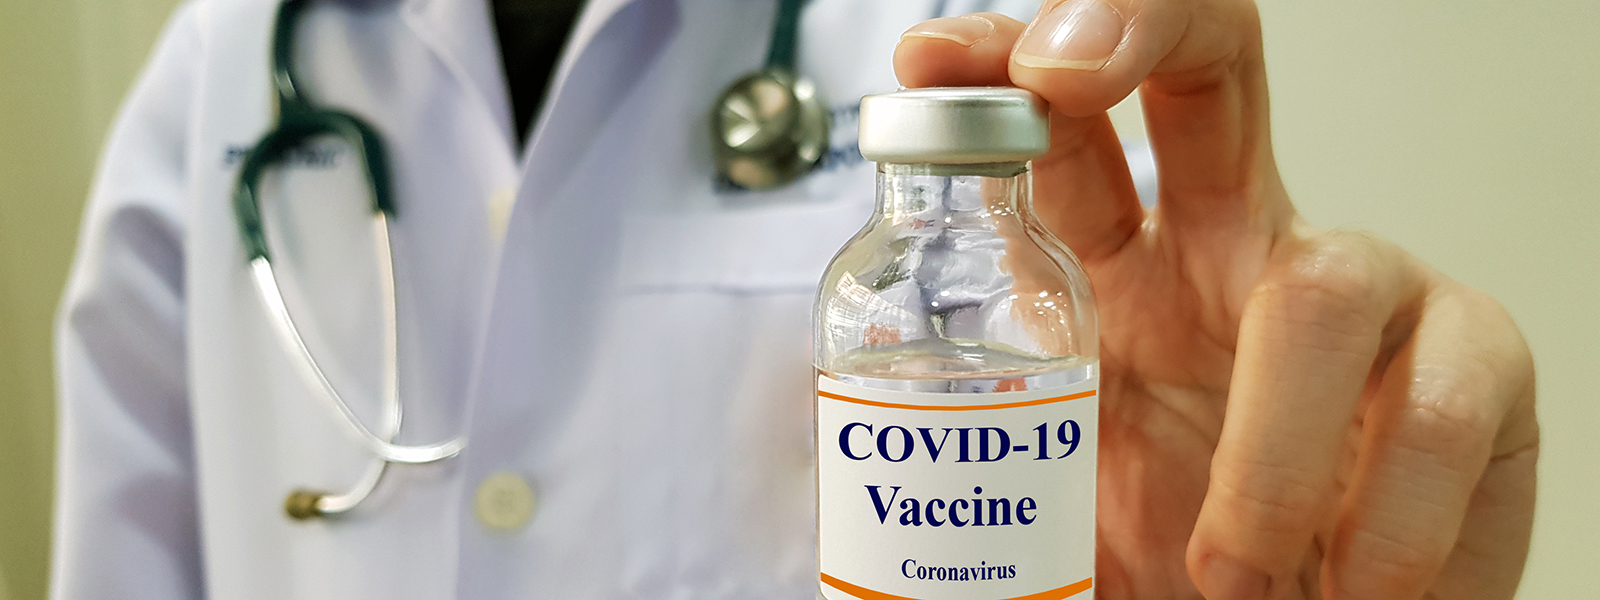  Coronavirus vaccine stock image